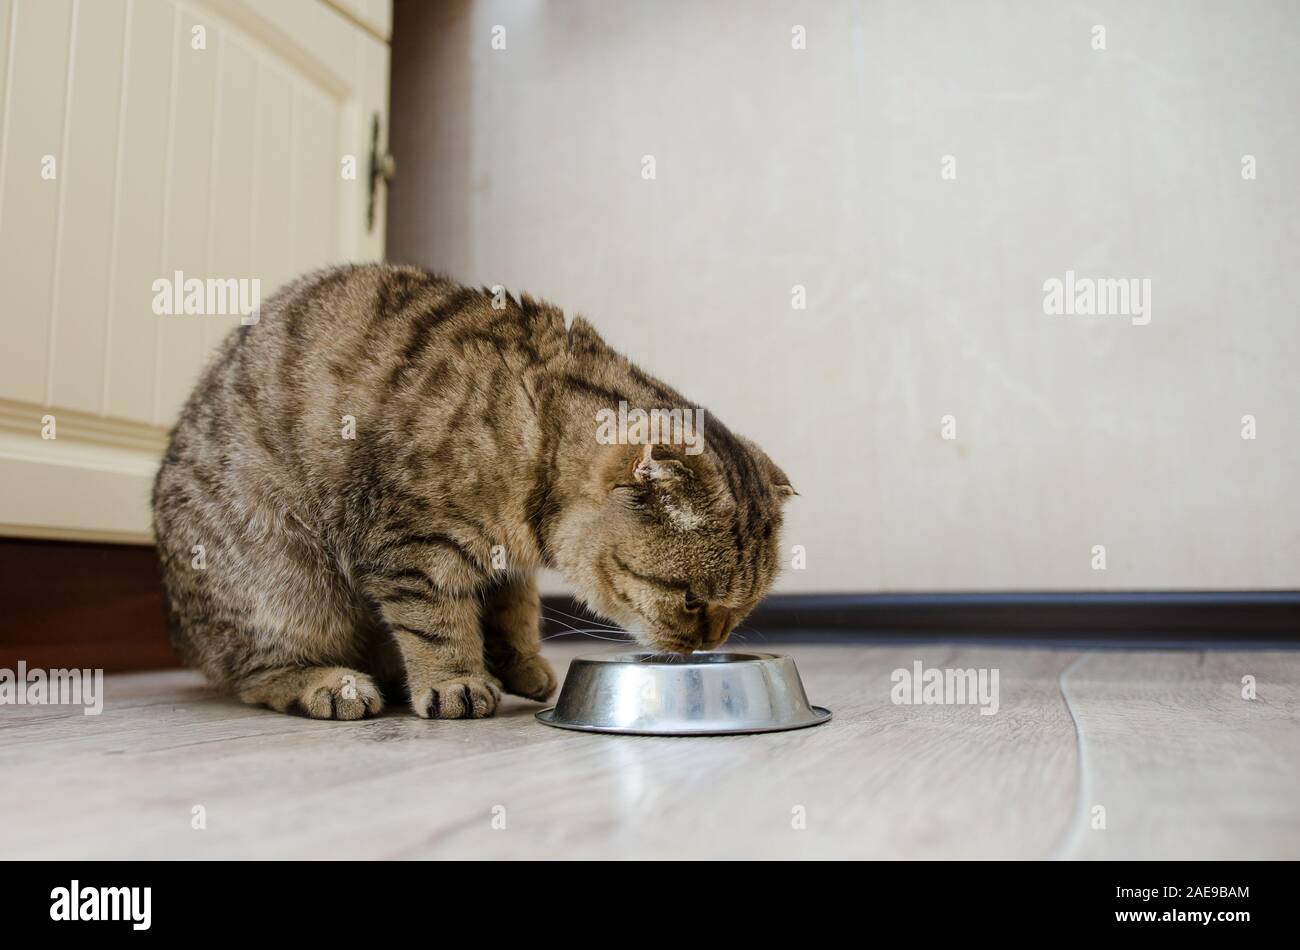 Gros plan du chat mignon de manger des aliments à partir d'un bol. Scottish Fold, un chat mange la nourriture sèche Banque D'Images